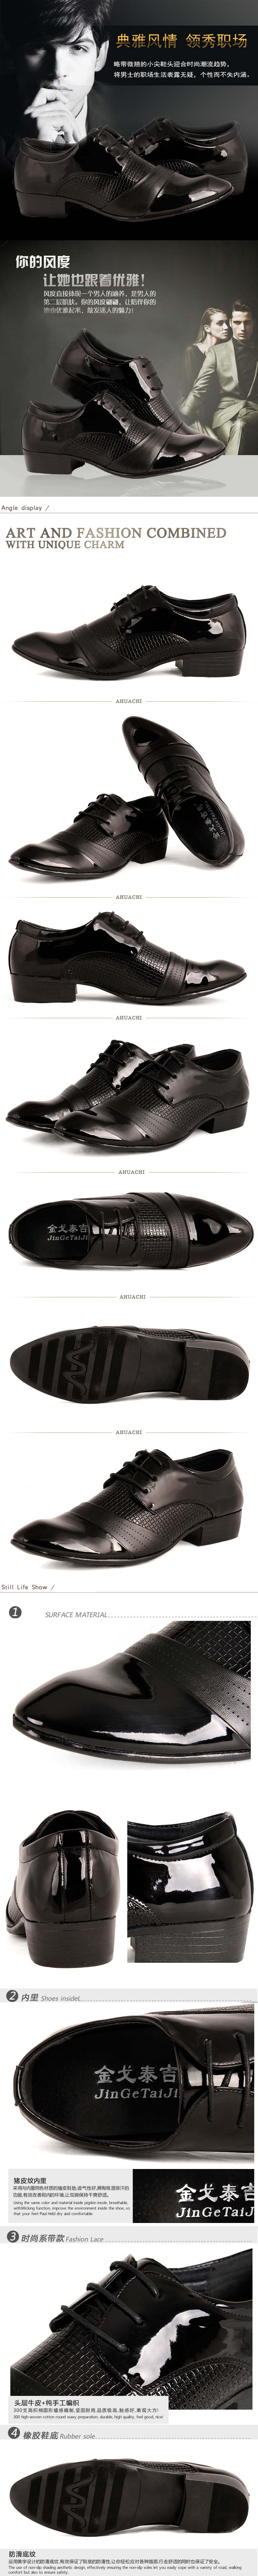 jual sepatu kerja pria model terbaru dengan koleksi terlengkap dan harga termurah daribahan kulit sintetis pilihan